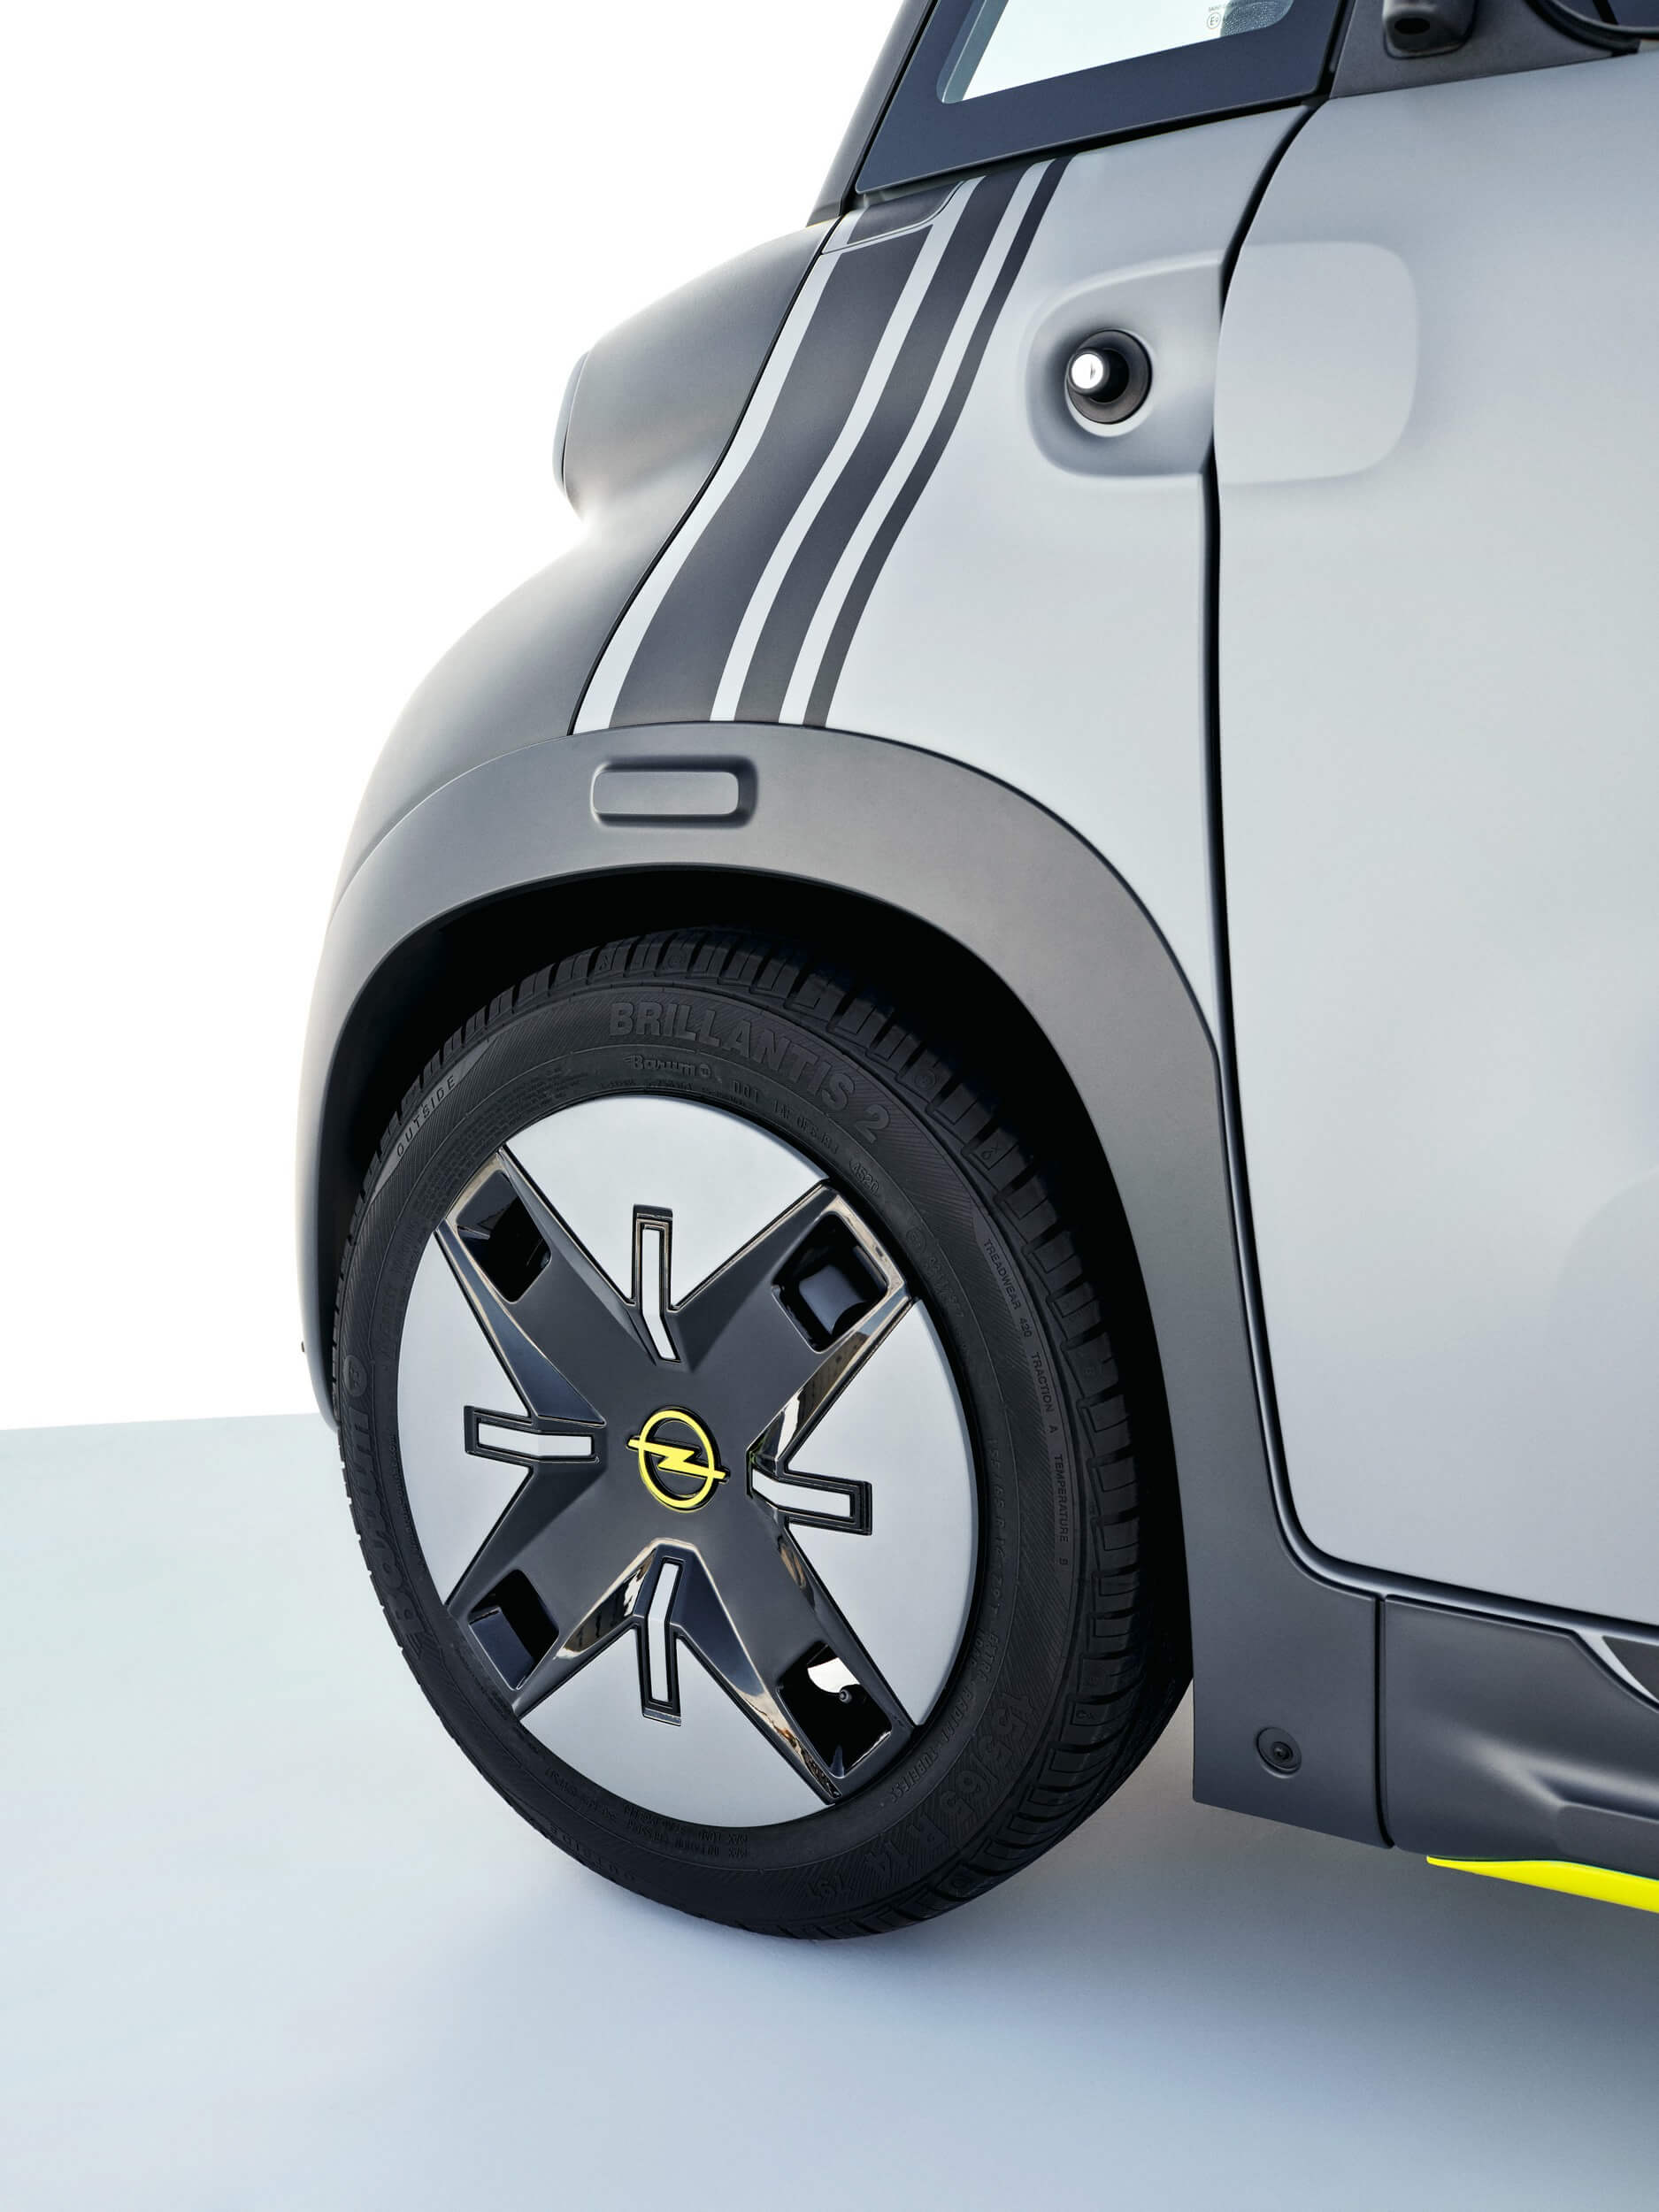 2022 Opel Rocks-e Wheel Wallpapers #12 of 17